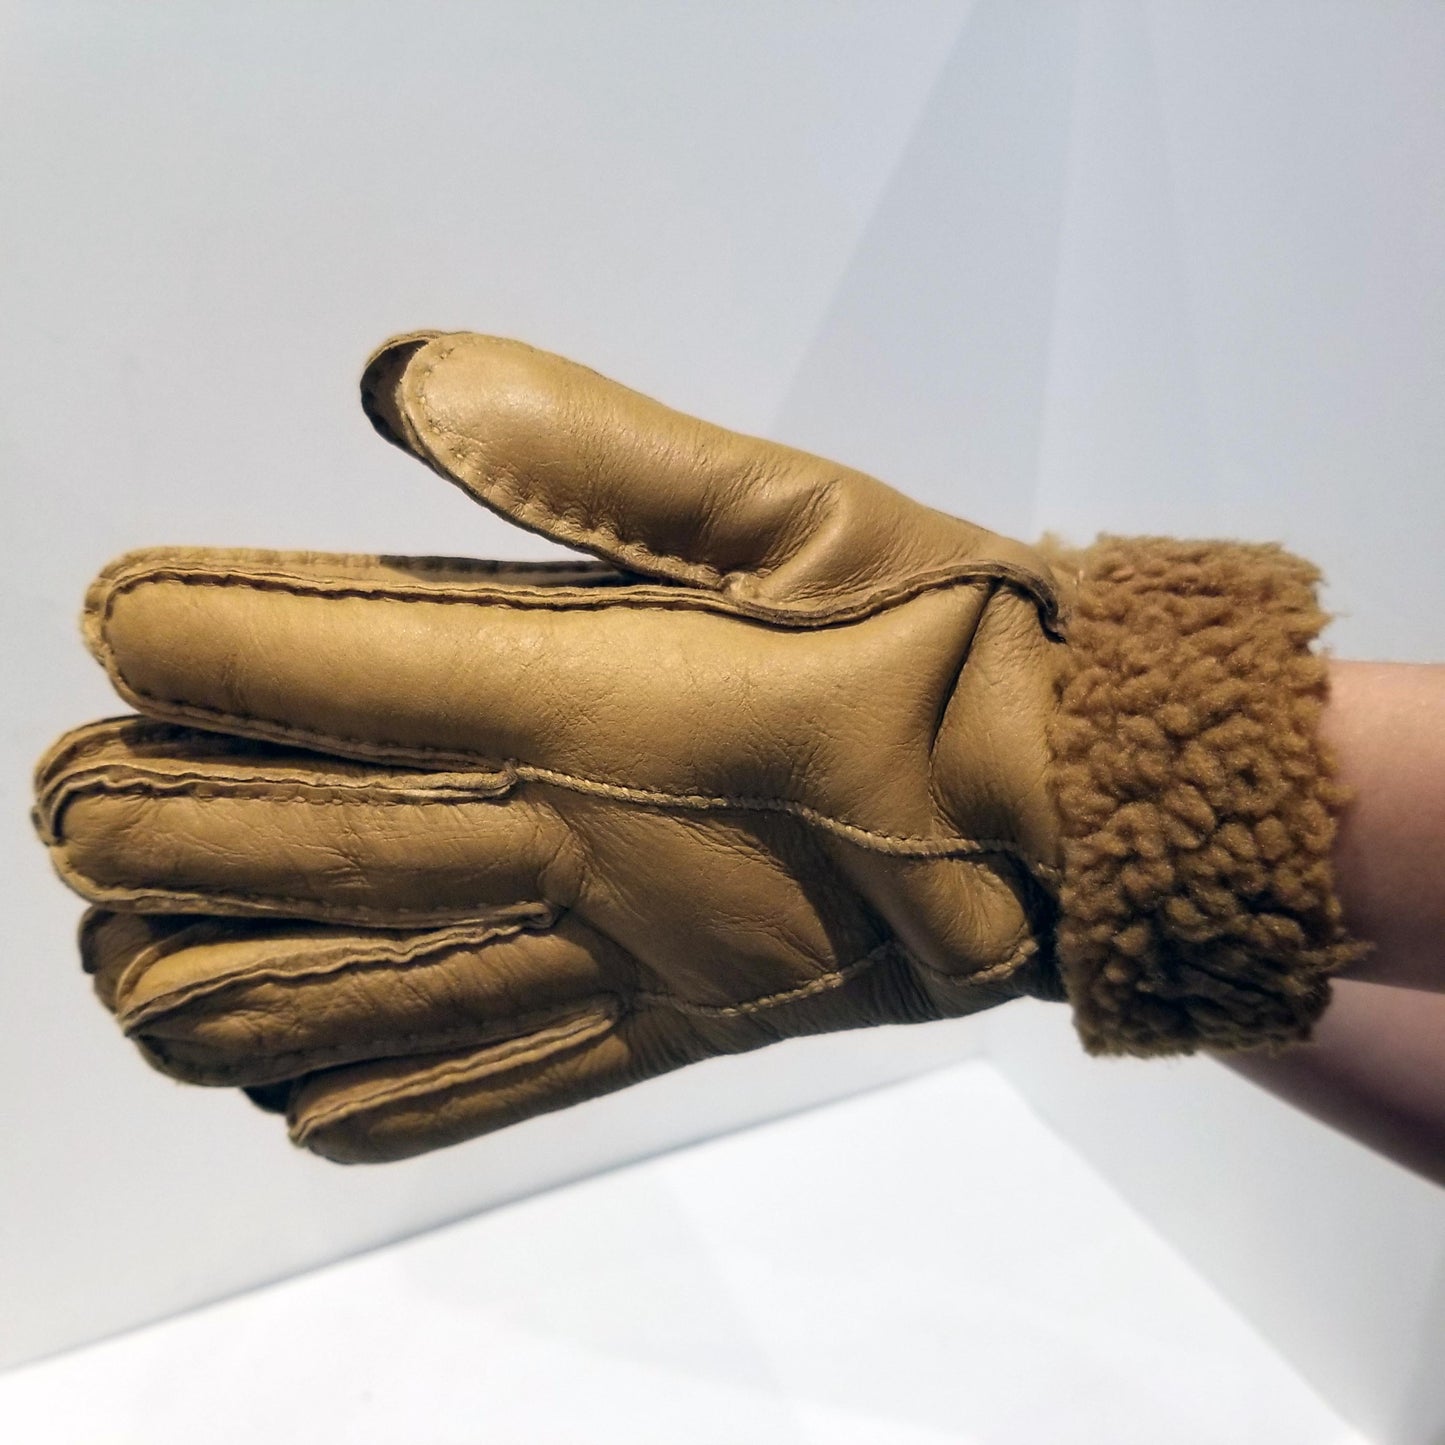 Beige Sheepskin Shearling Gloves